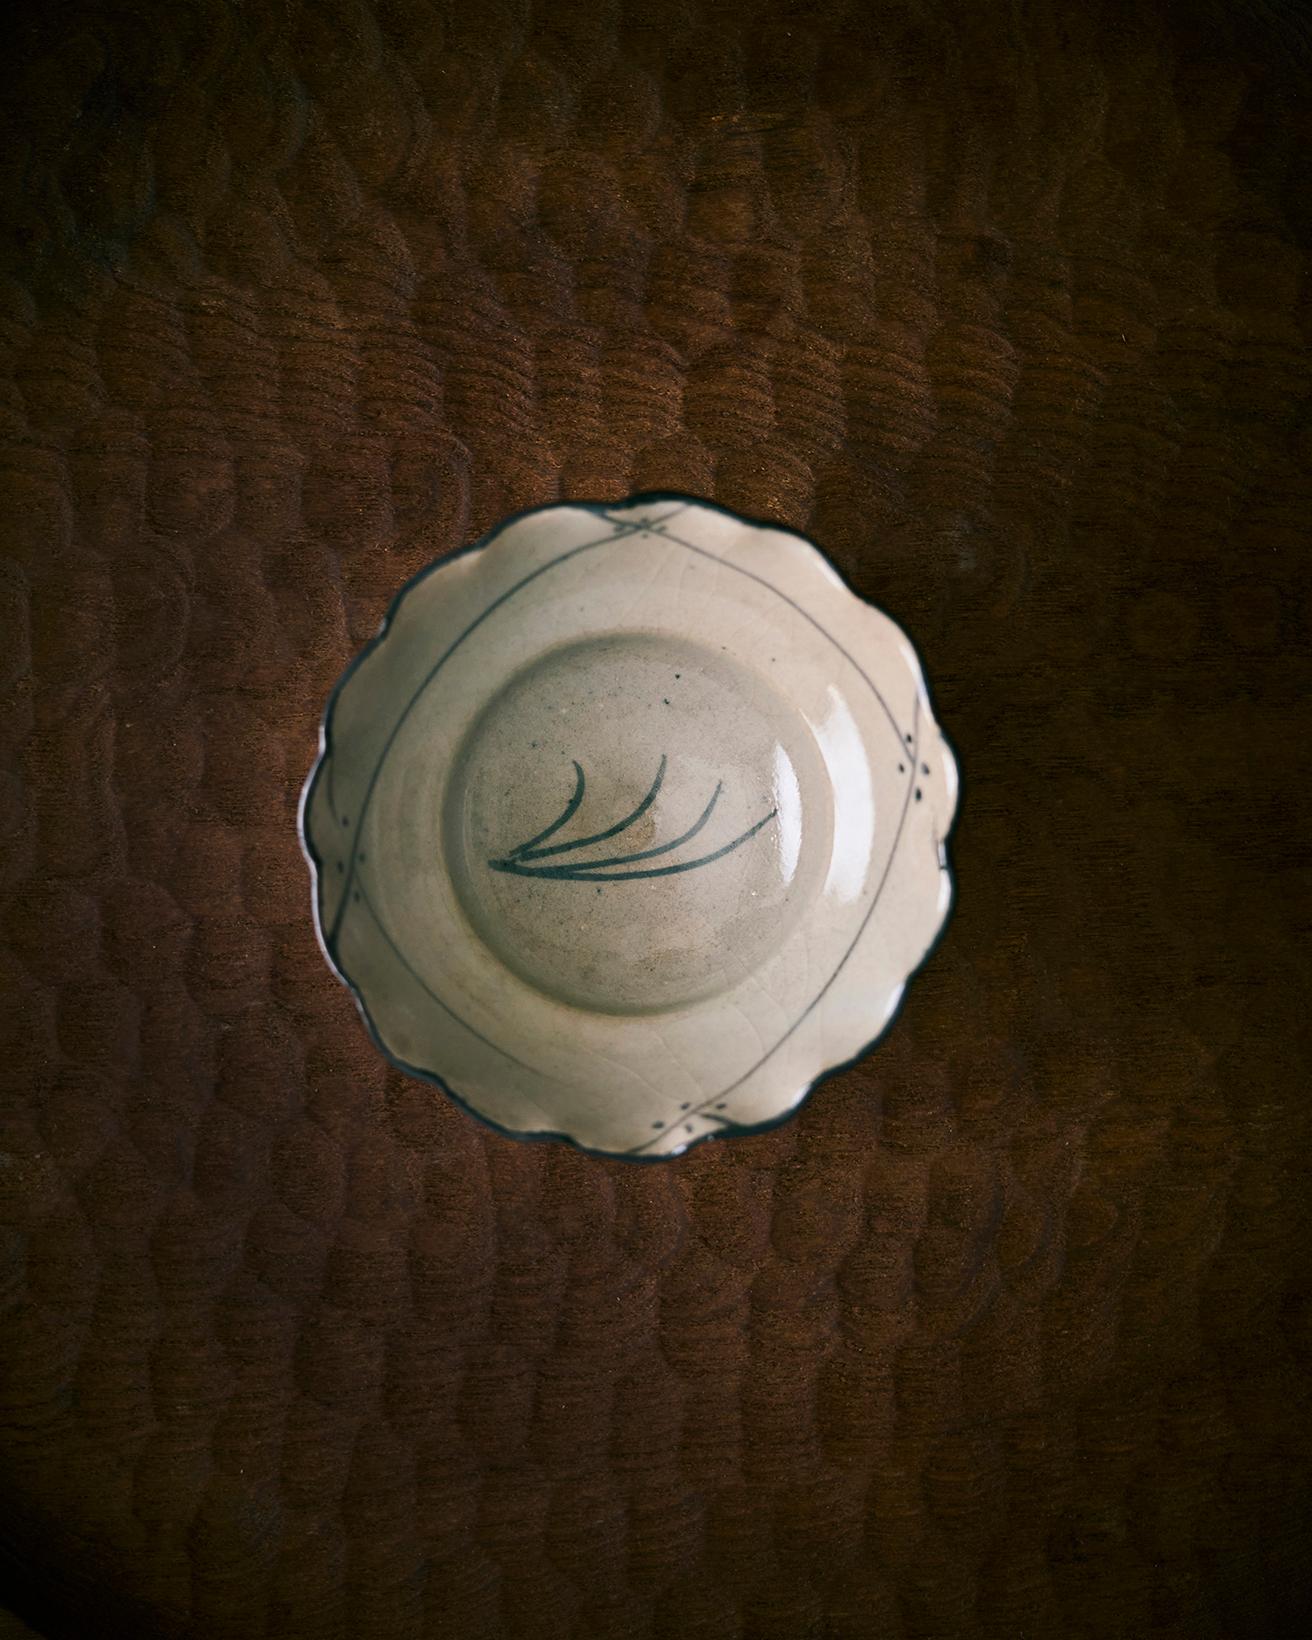 以前唐津を旅したとき、大好きな〈隆太窯〉に立ち寄りました。そこで見つけたのがこの中里太亀さんの豆皿。佇まいは控えめですが、盛り映えするのでとても使いやすいんです。我が家では超ヘビロテの器です。